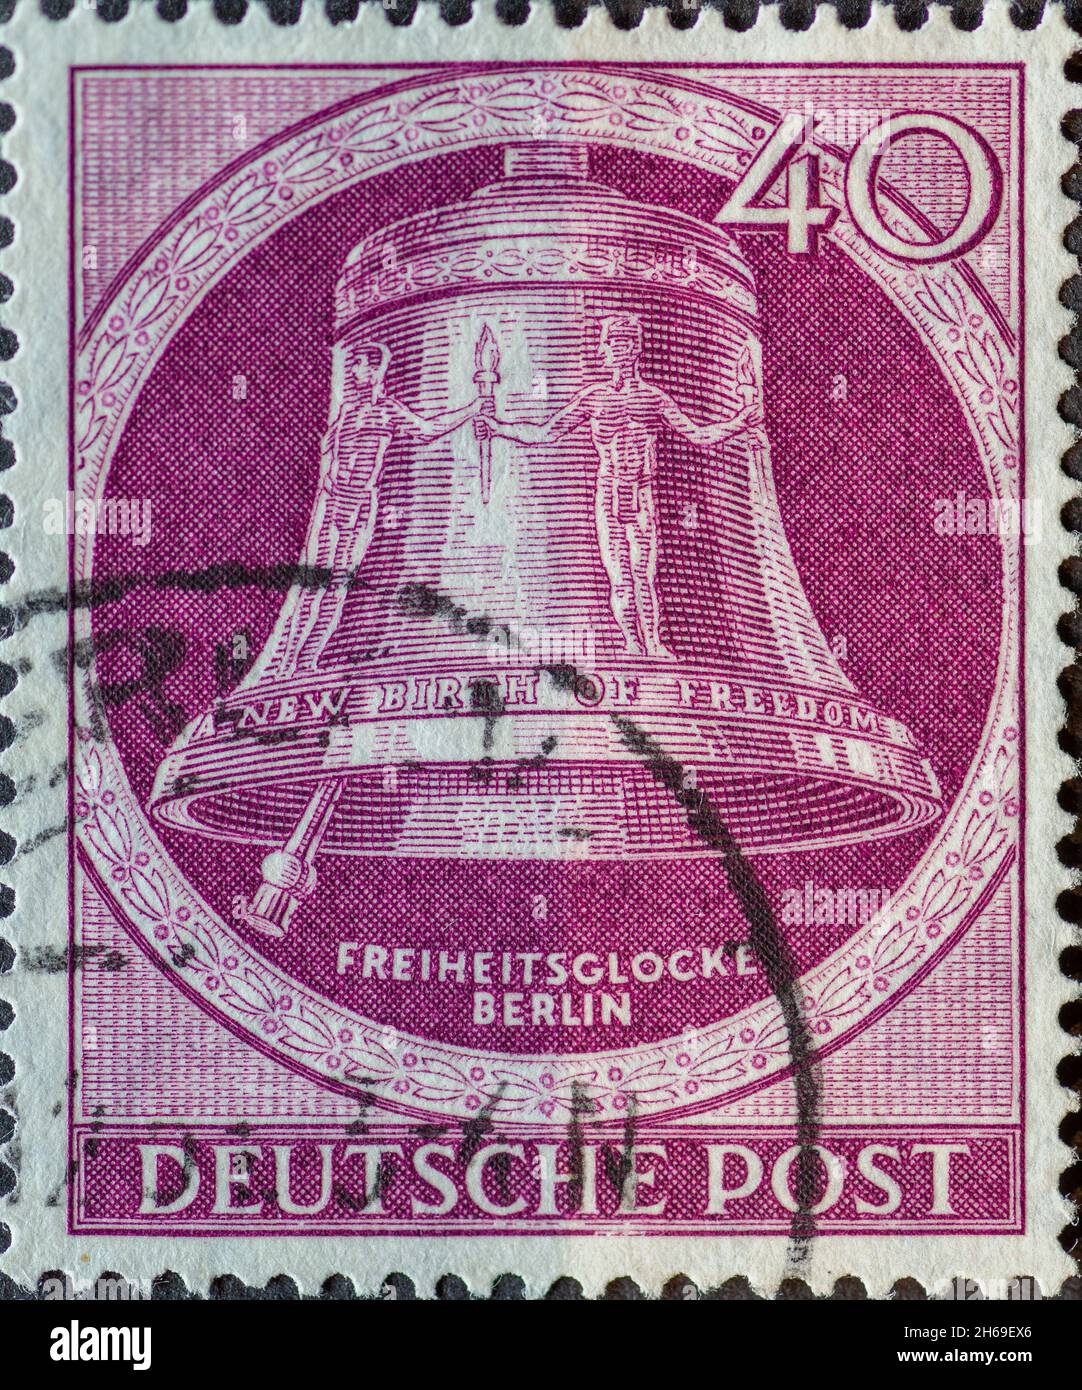 GERMANIA, Berlino - CIRCA 1951: Un francobollo dalla Germania, Berlino mostrando la campana della libertà con il testo: Nuova nascita della libertà. Clapper a sinistra. Colore: Foto Stock